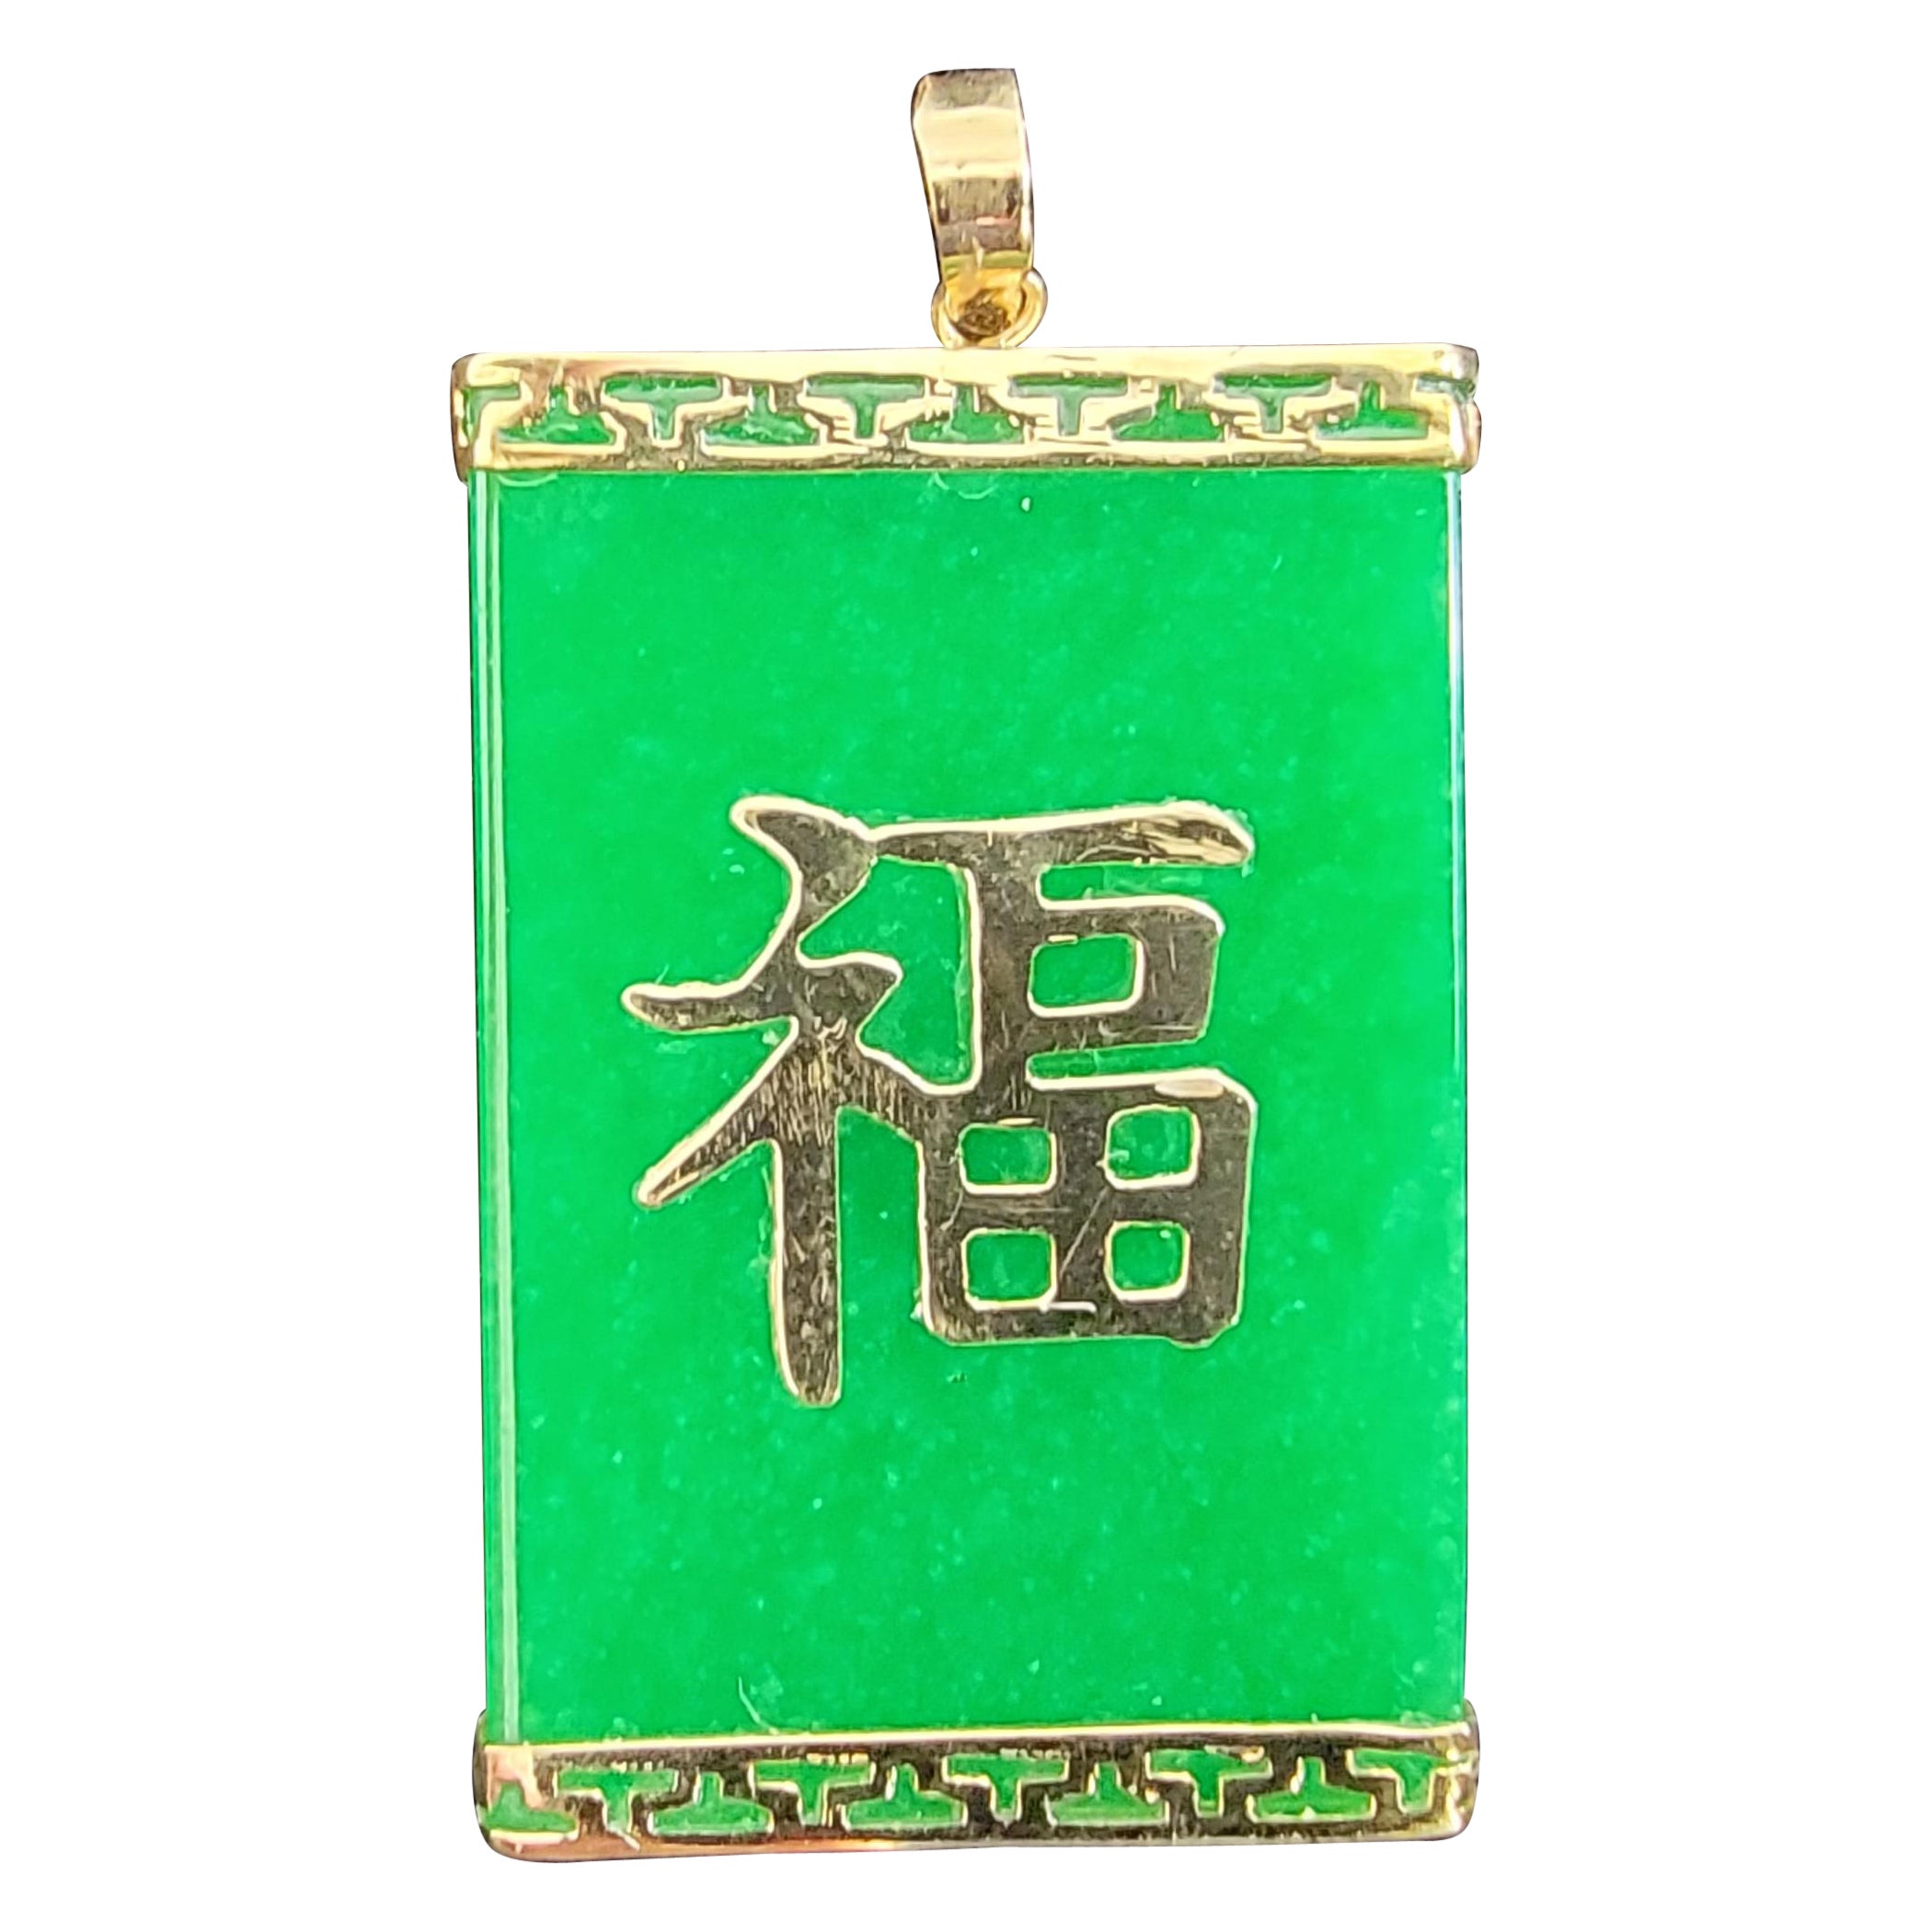 Pendentif en jade Fu Fuku Fortune avec or jaune 14 carats